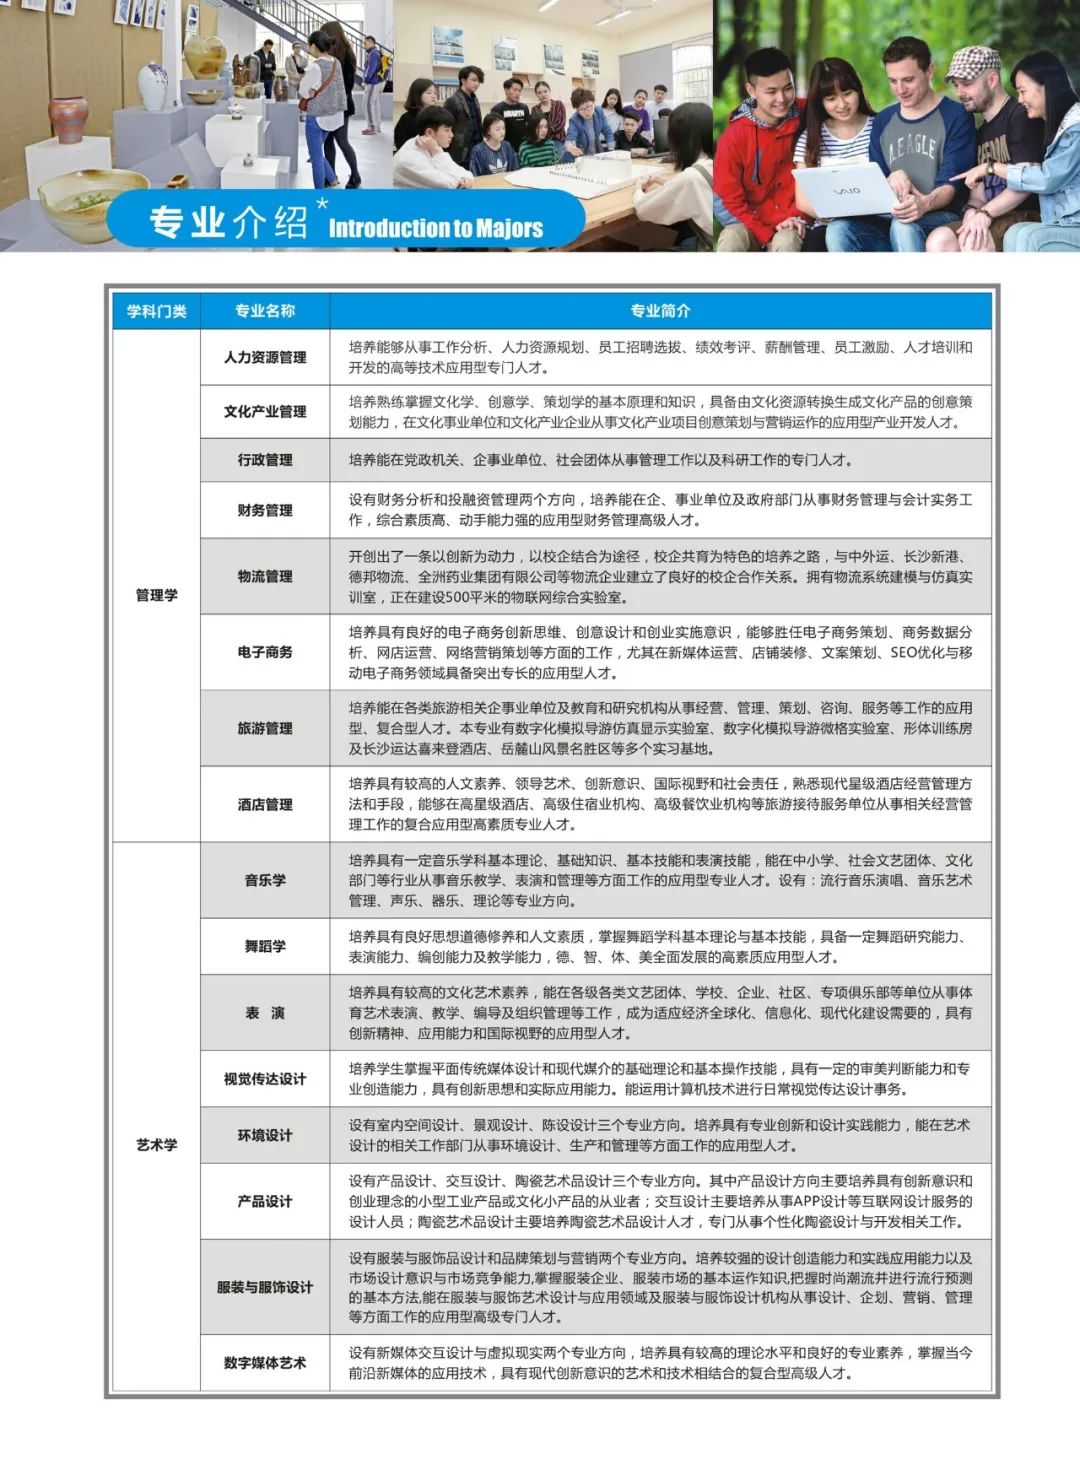 2020年湖南涉外经济学院招生简章画册